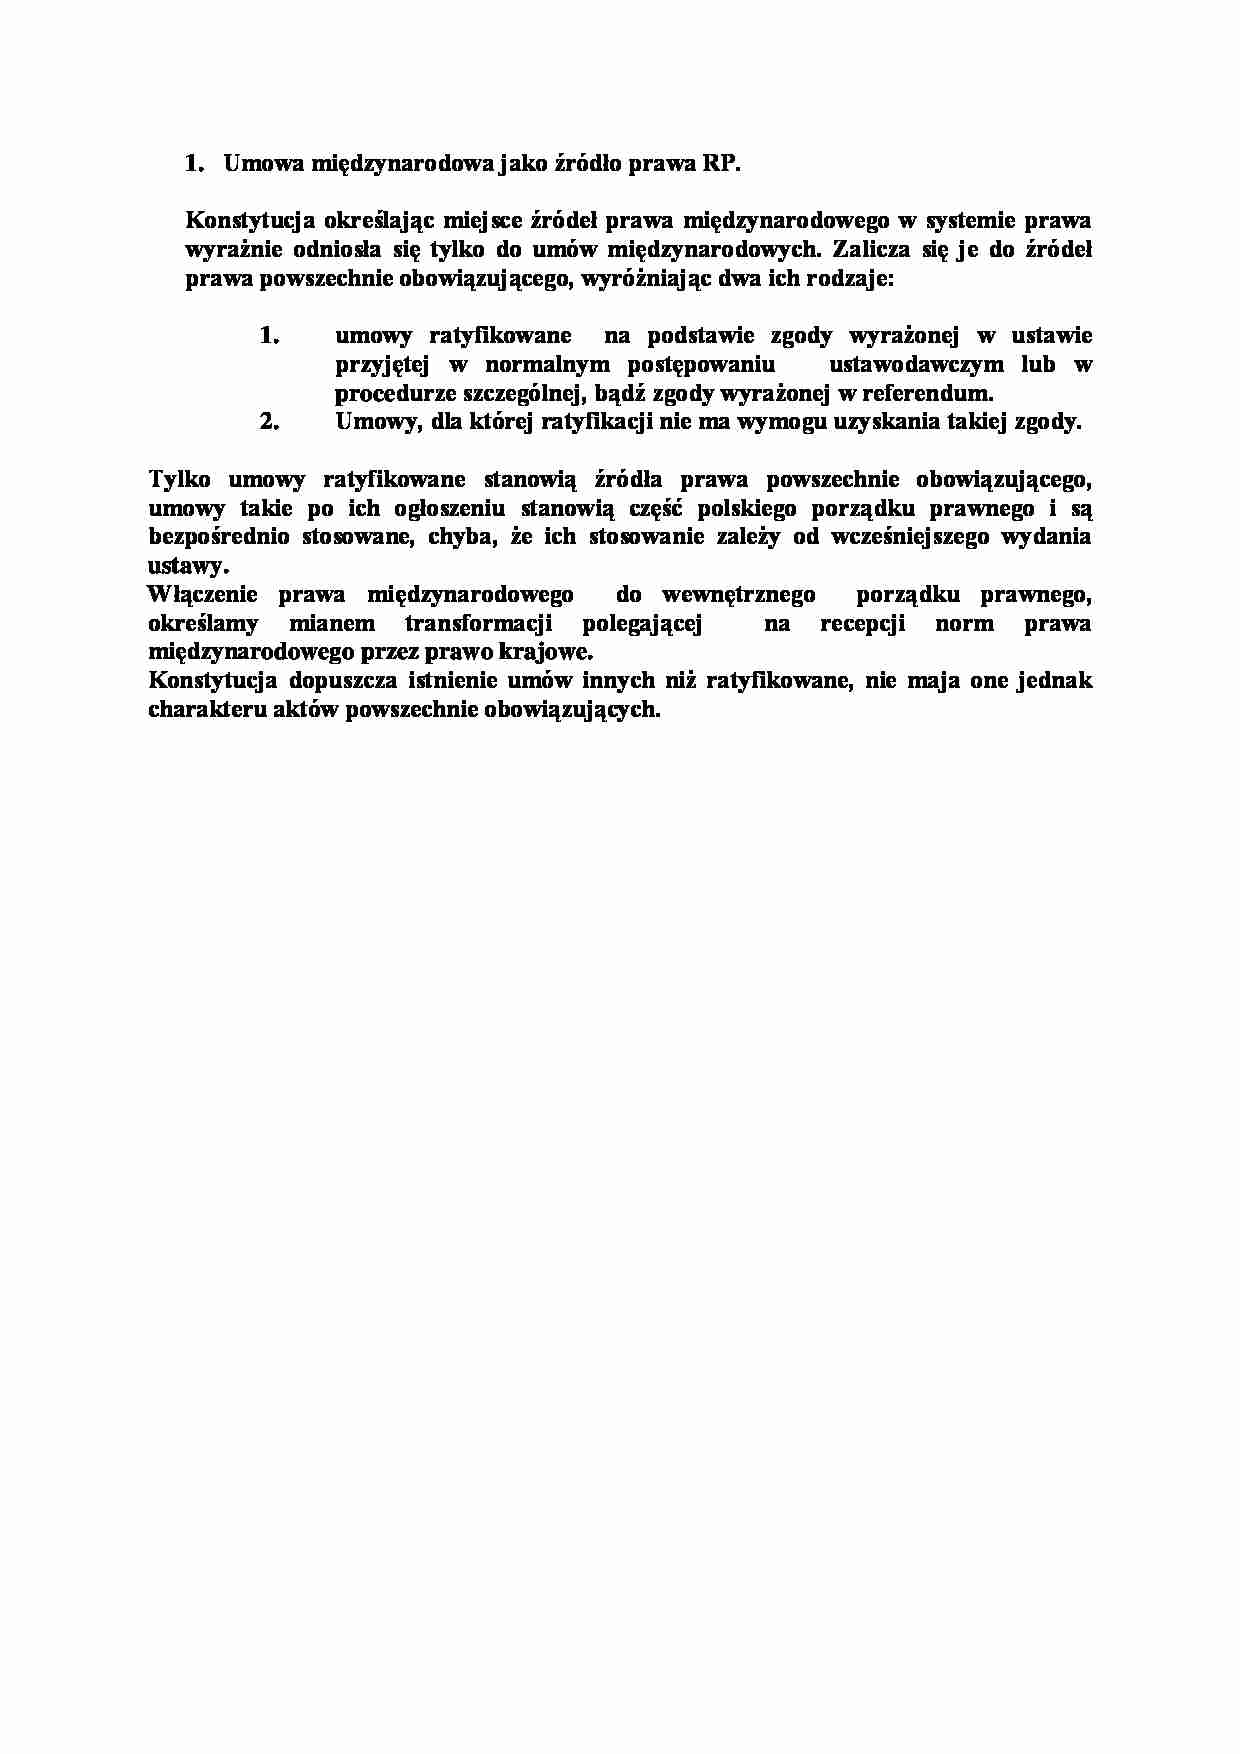 Umowa międzynarodowa jako źródło prawa RP-opracowanie - strona 1